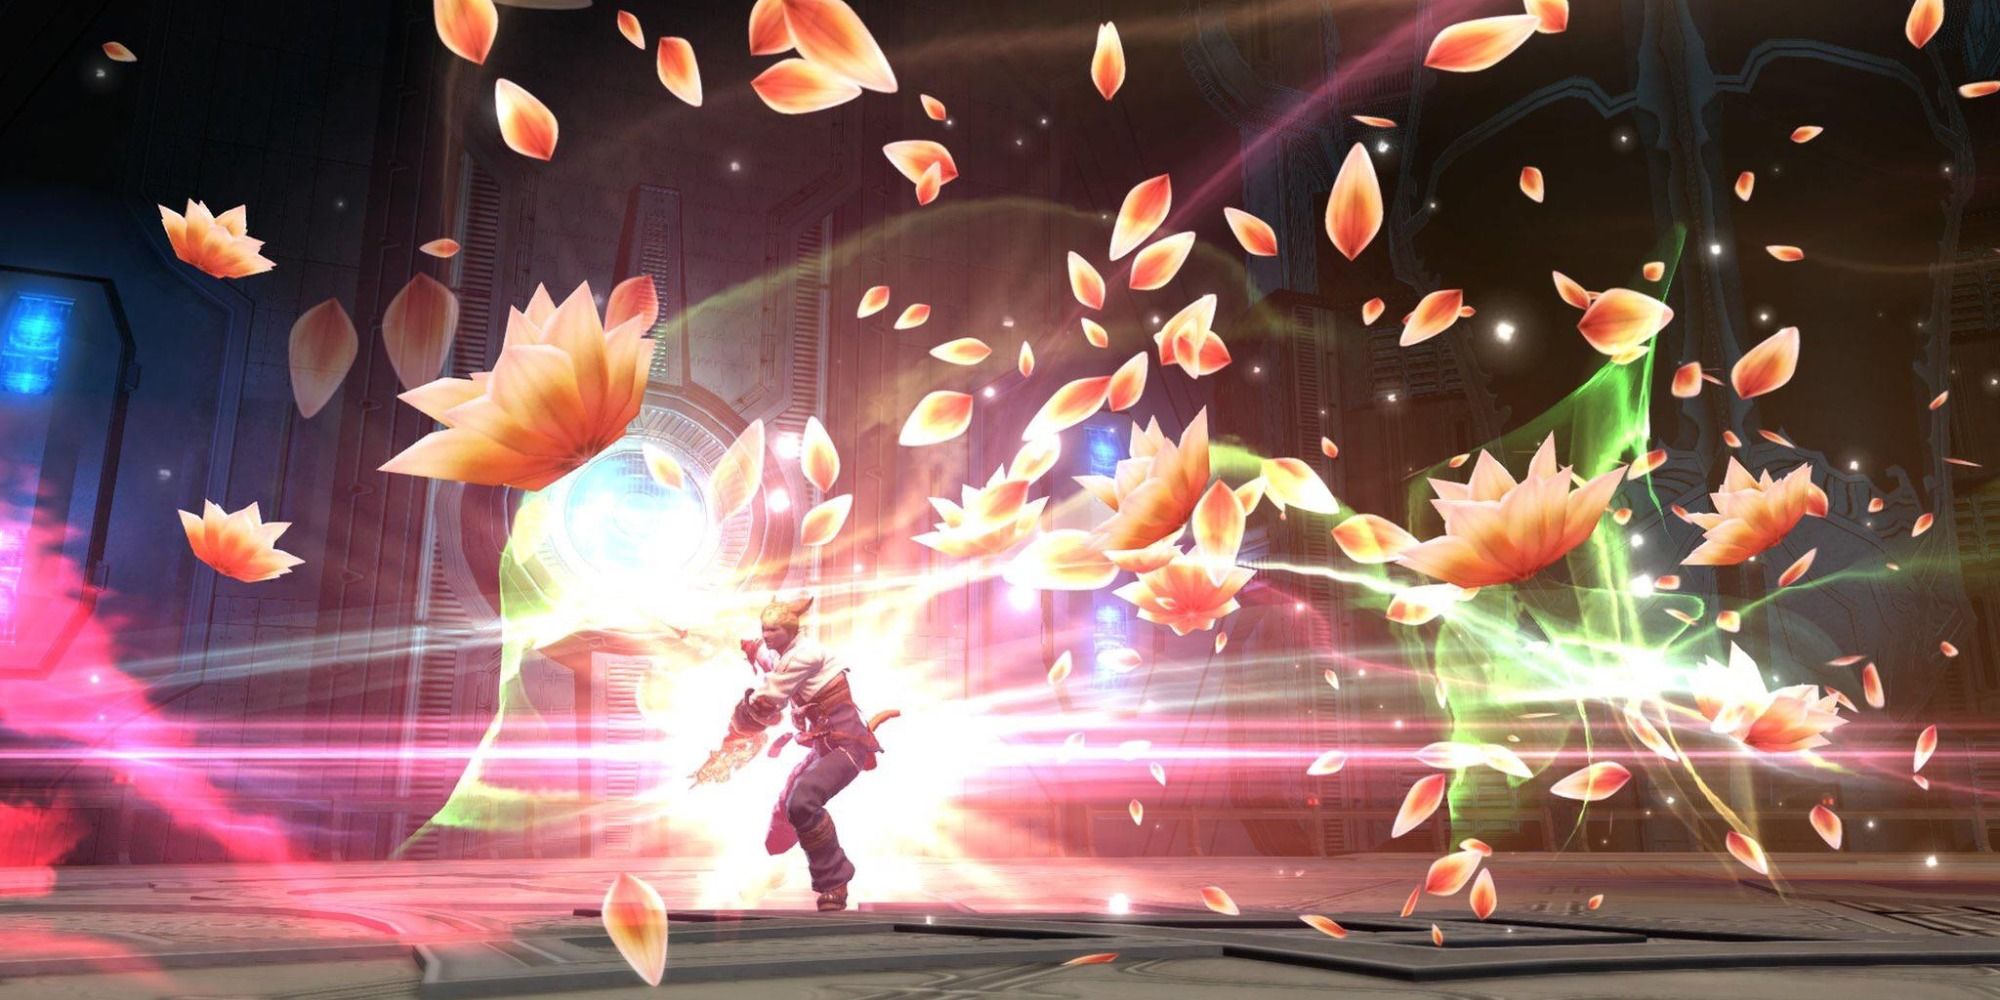 Un Danseur utilisant une attaque dans Final Fantasy 14